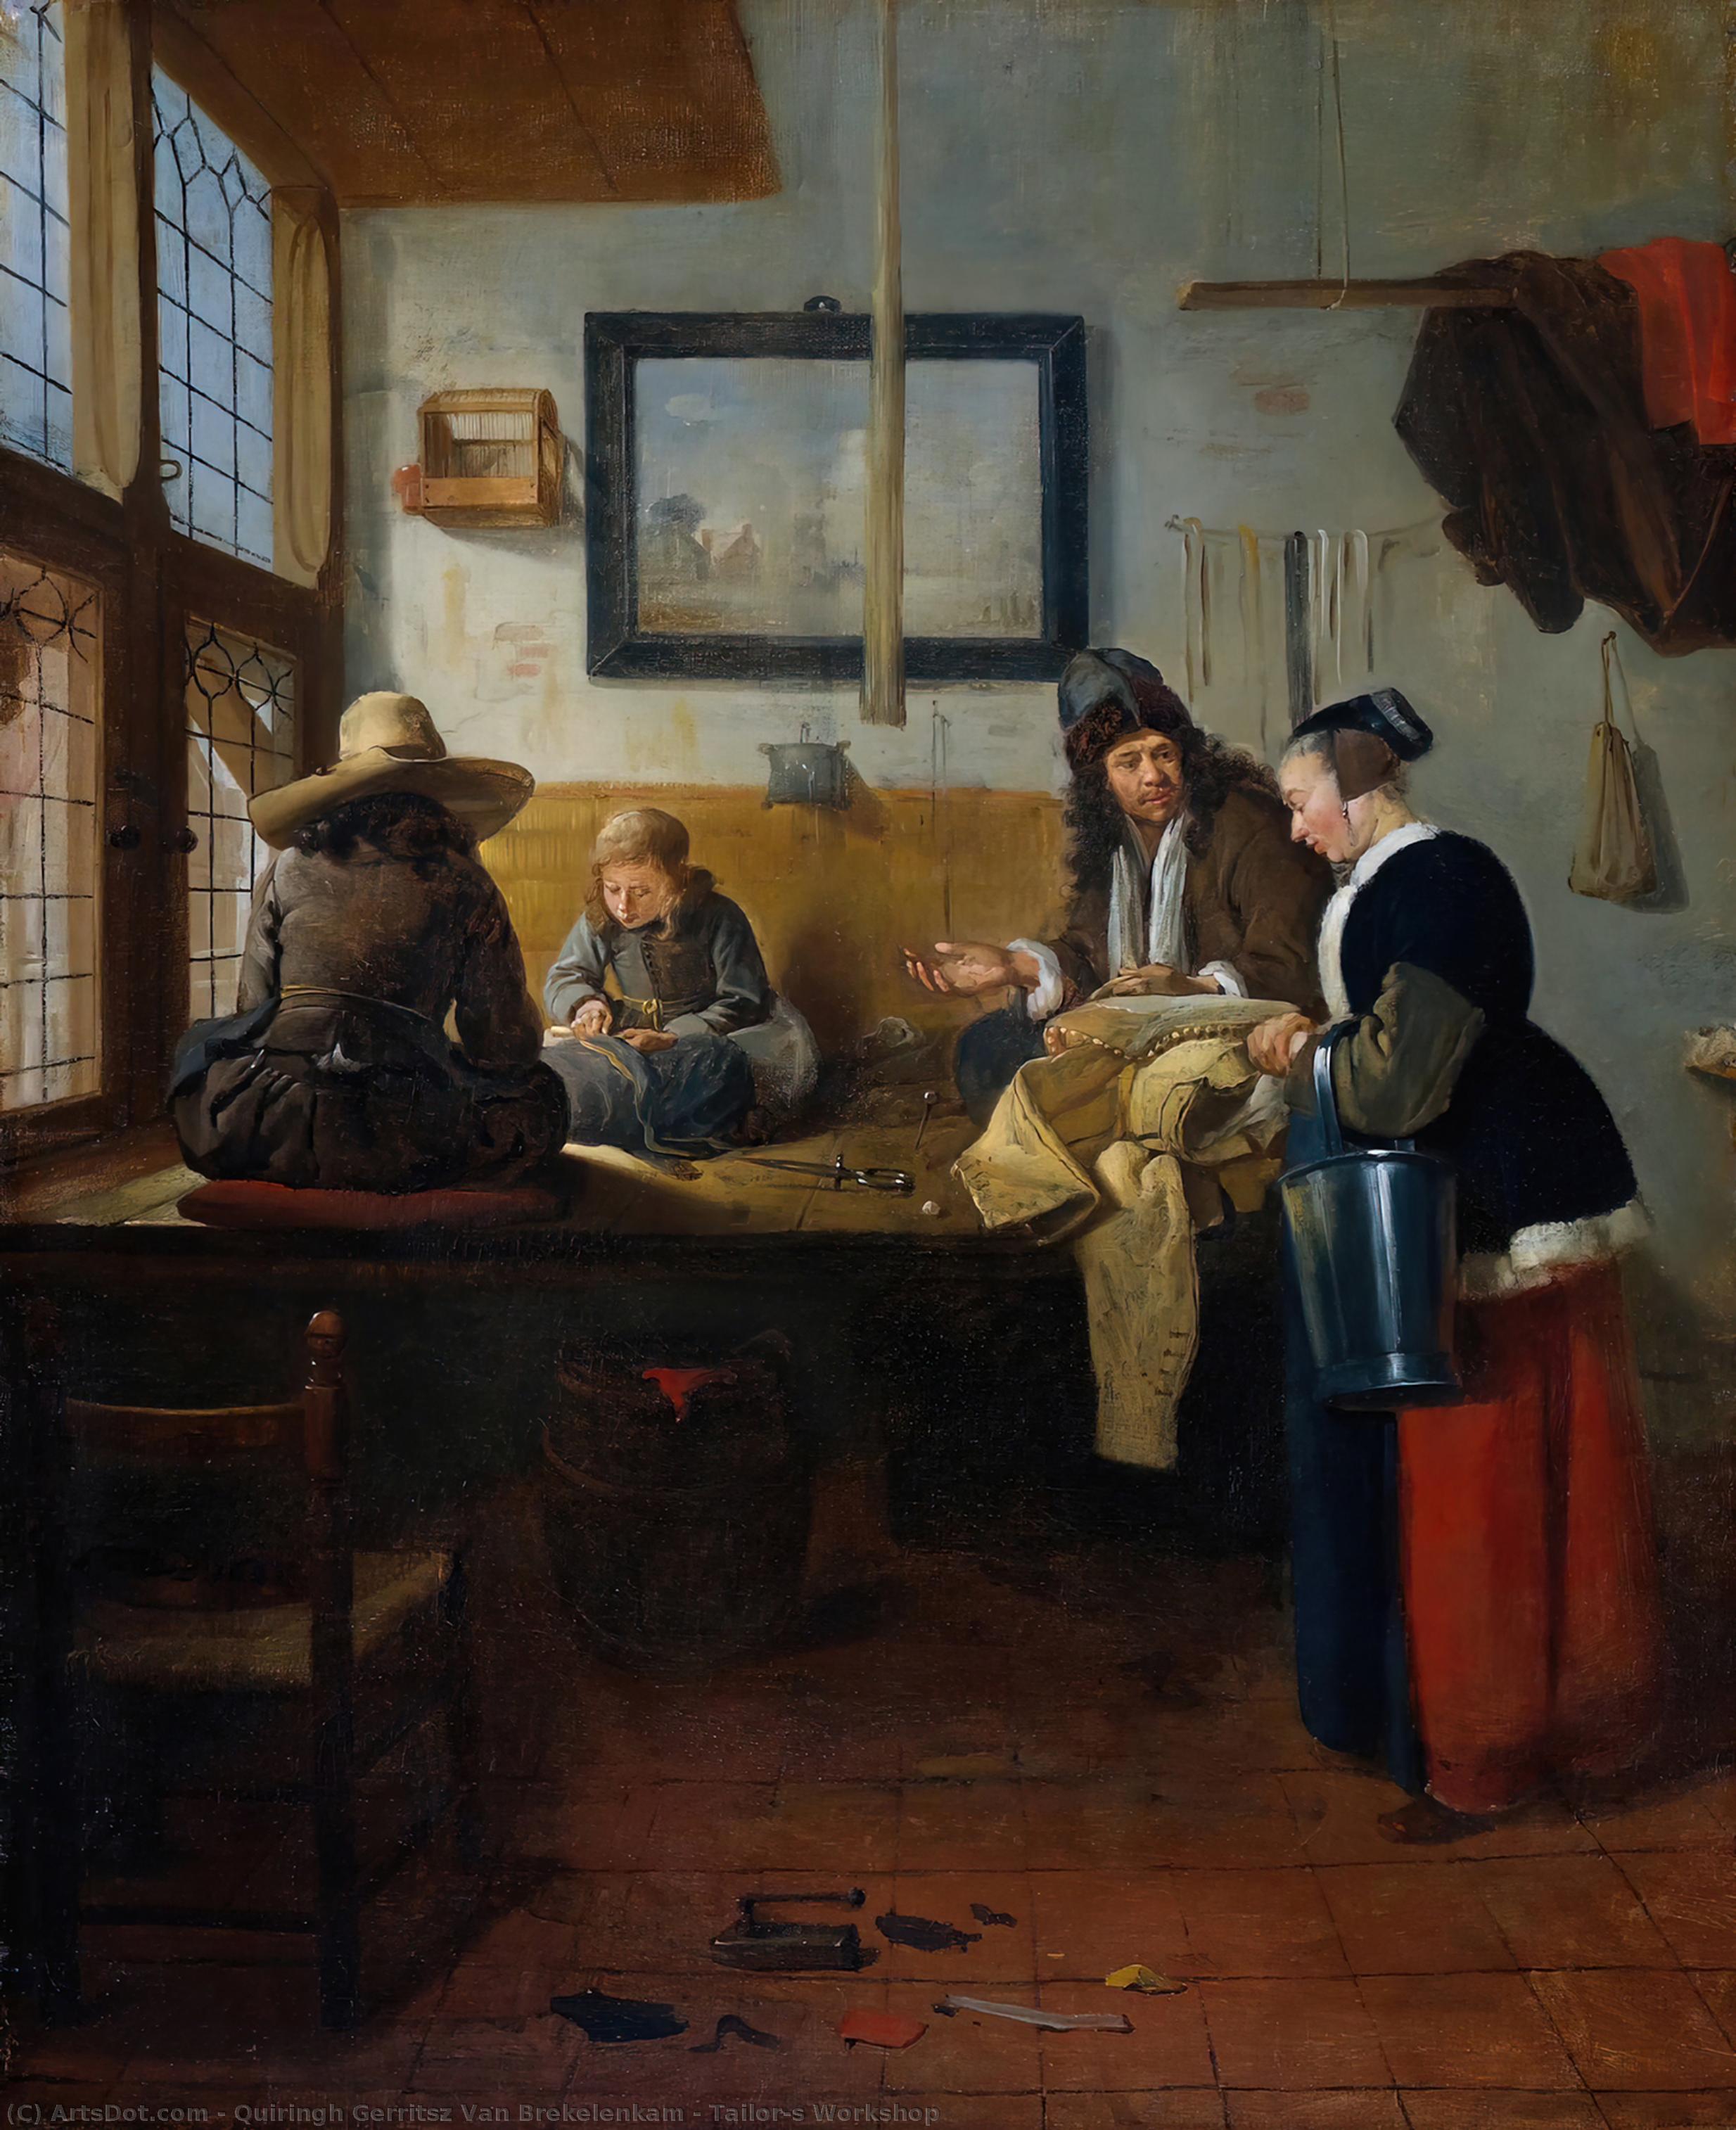 WikiOO.org - Encyclopedia of Fine Arts - Lukisan, Artwork Quiringh Gerritsz Van Brekelenkam - Tailor's Workshop